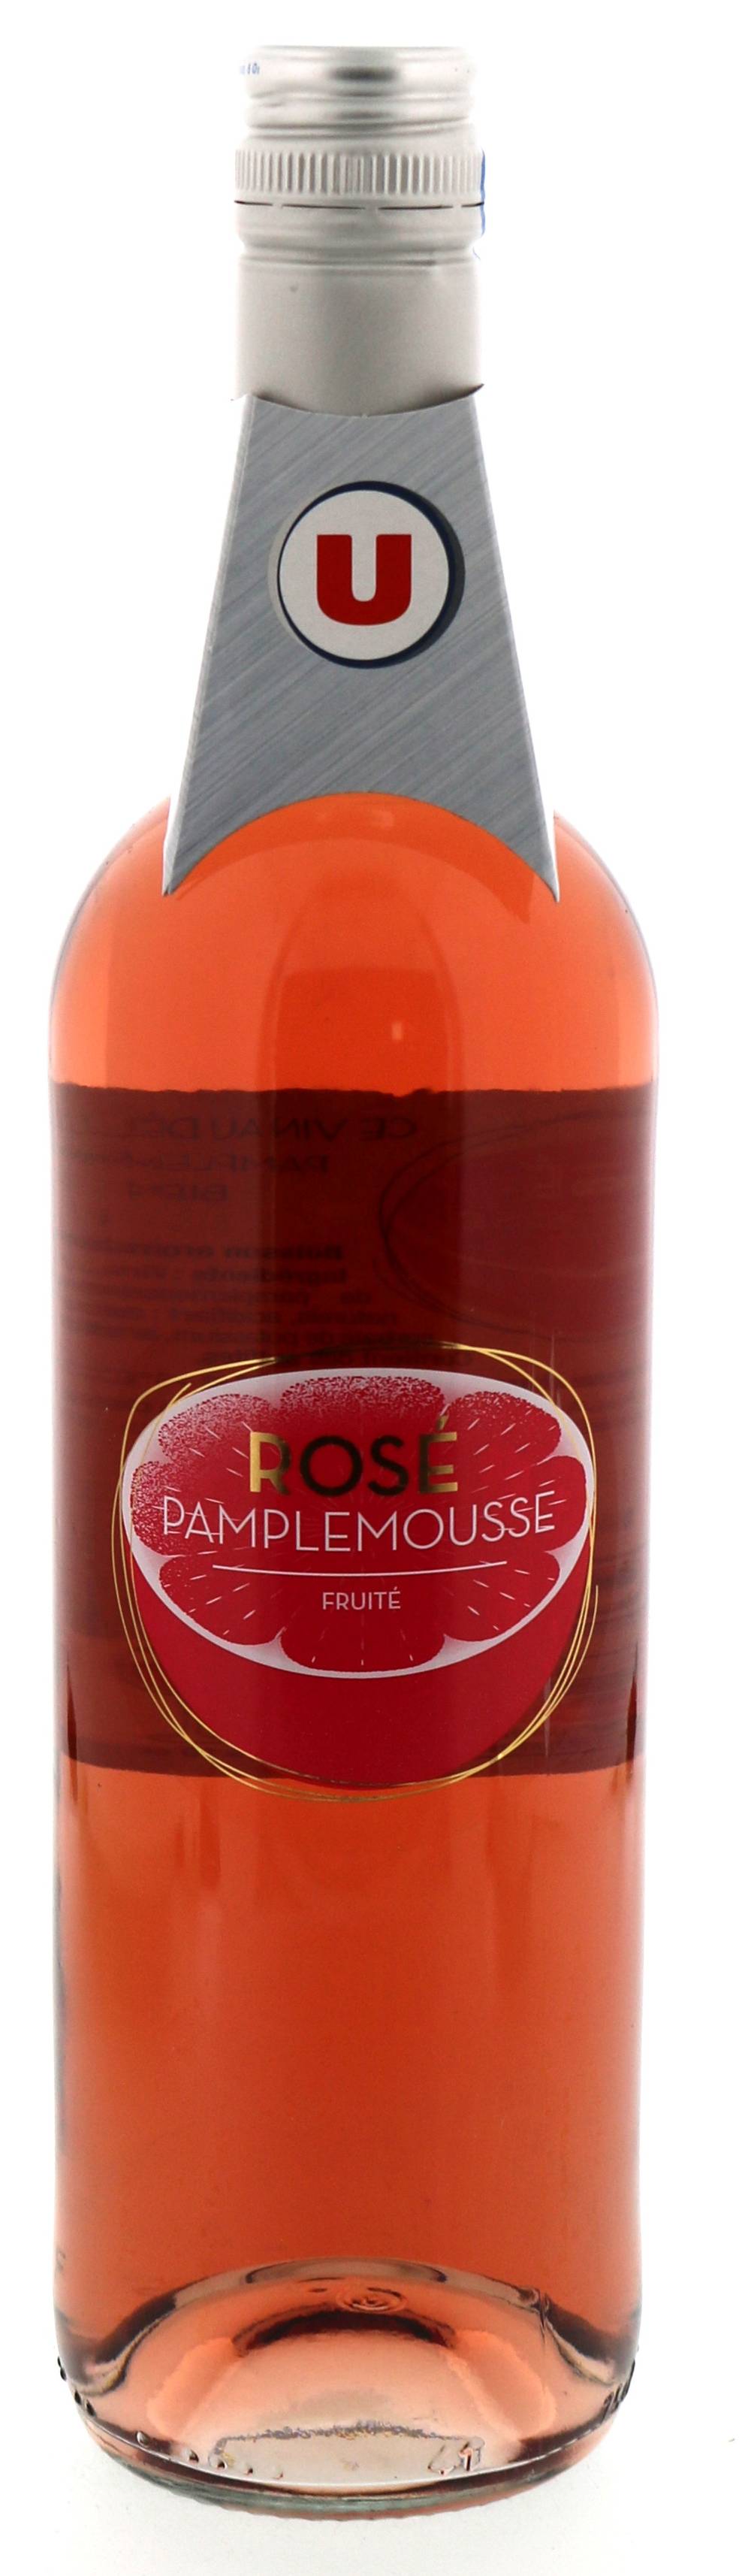 Les Produits U - Vin aromatisée à rosé pamplemousse (750 ml)